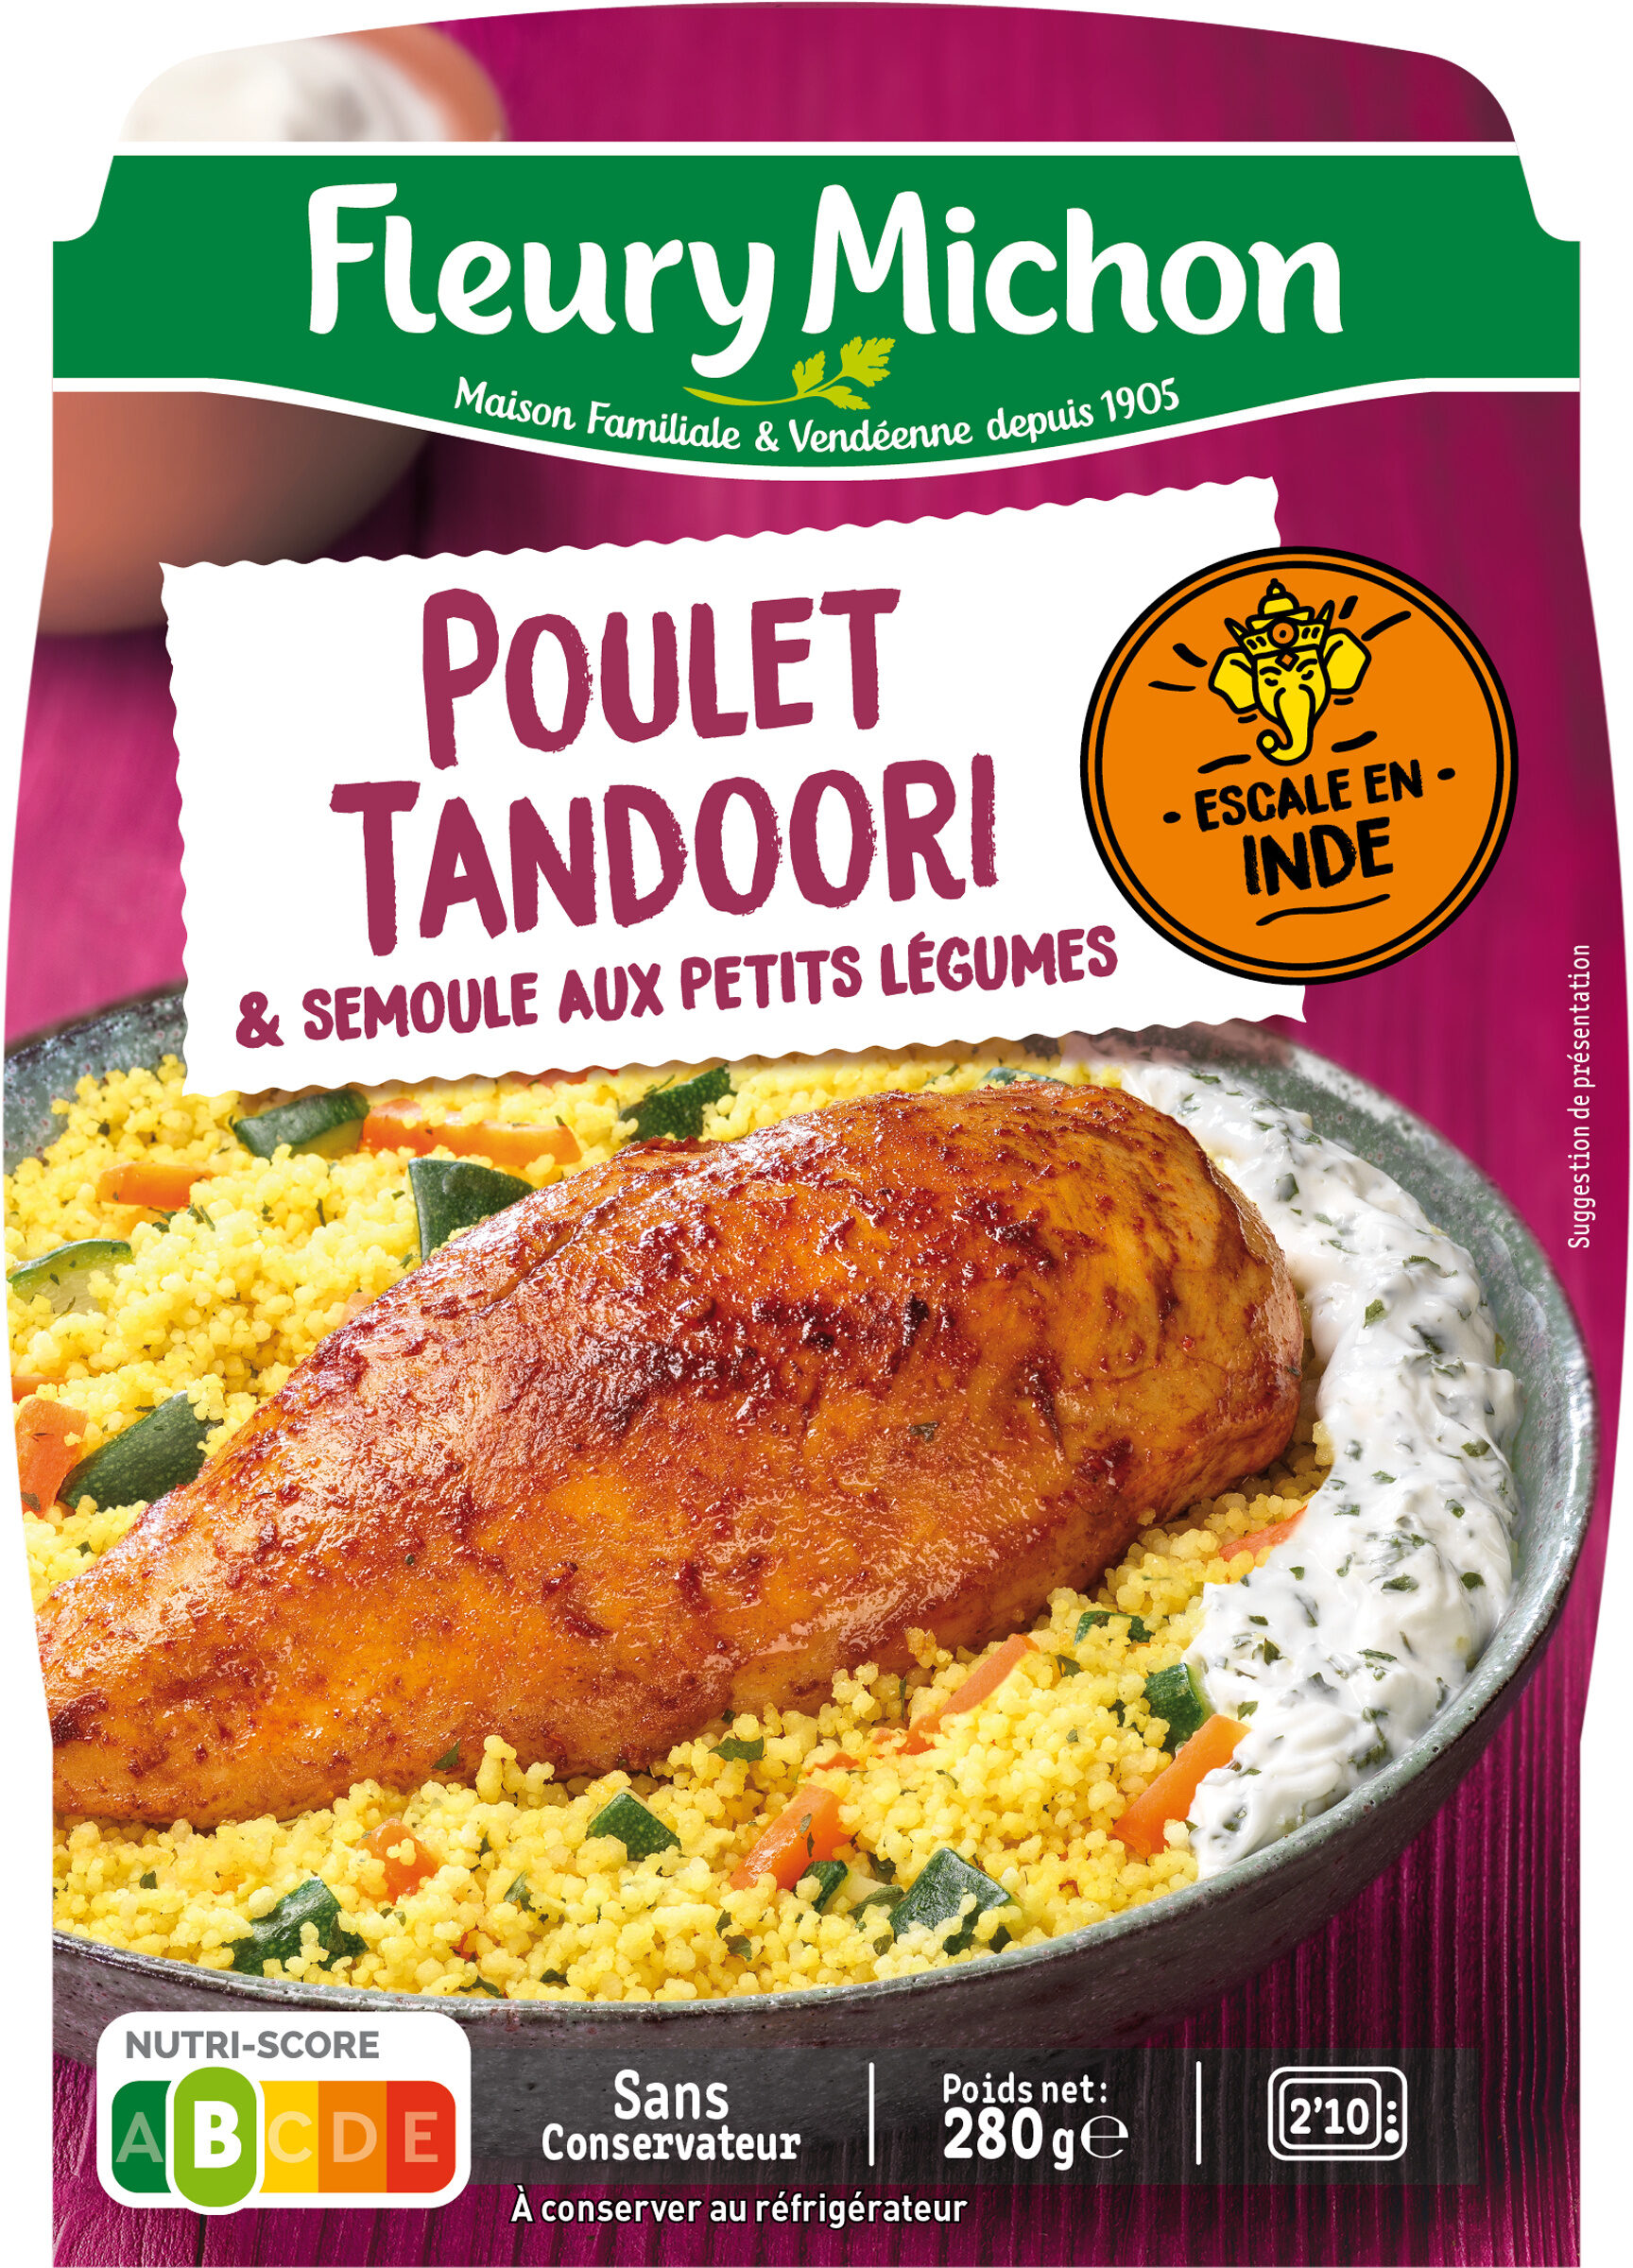 Le Poulet tandoori semoule aux petits légumes - Producto - fr